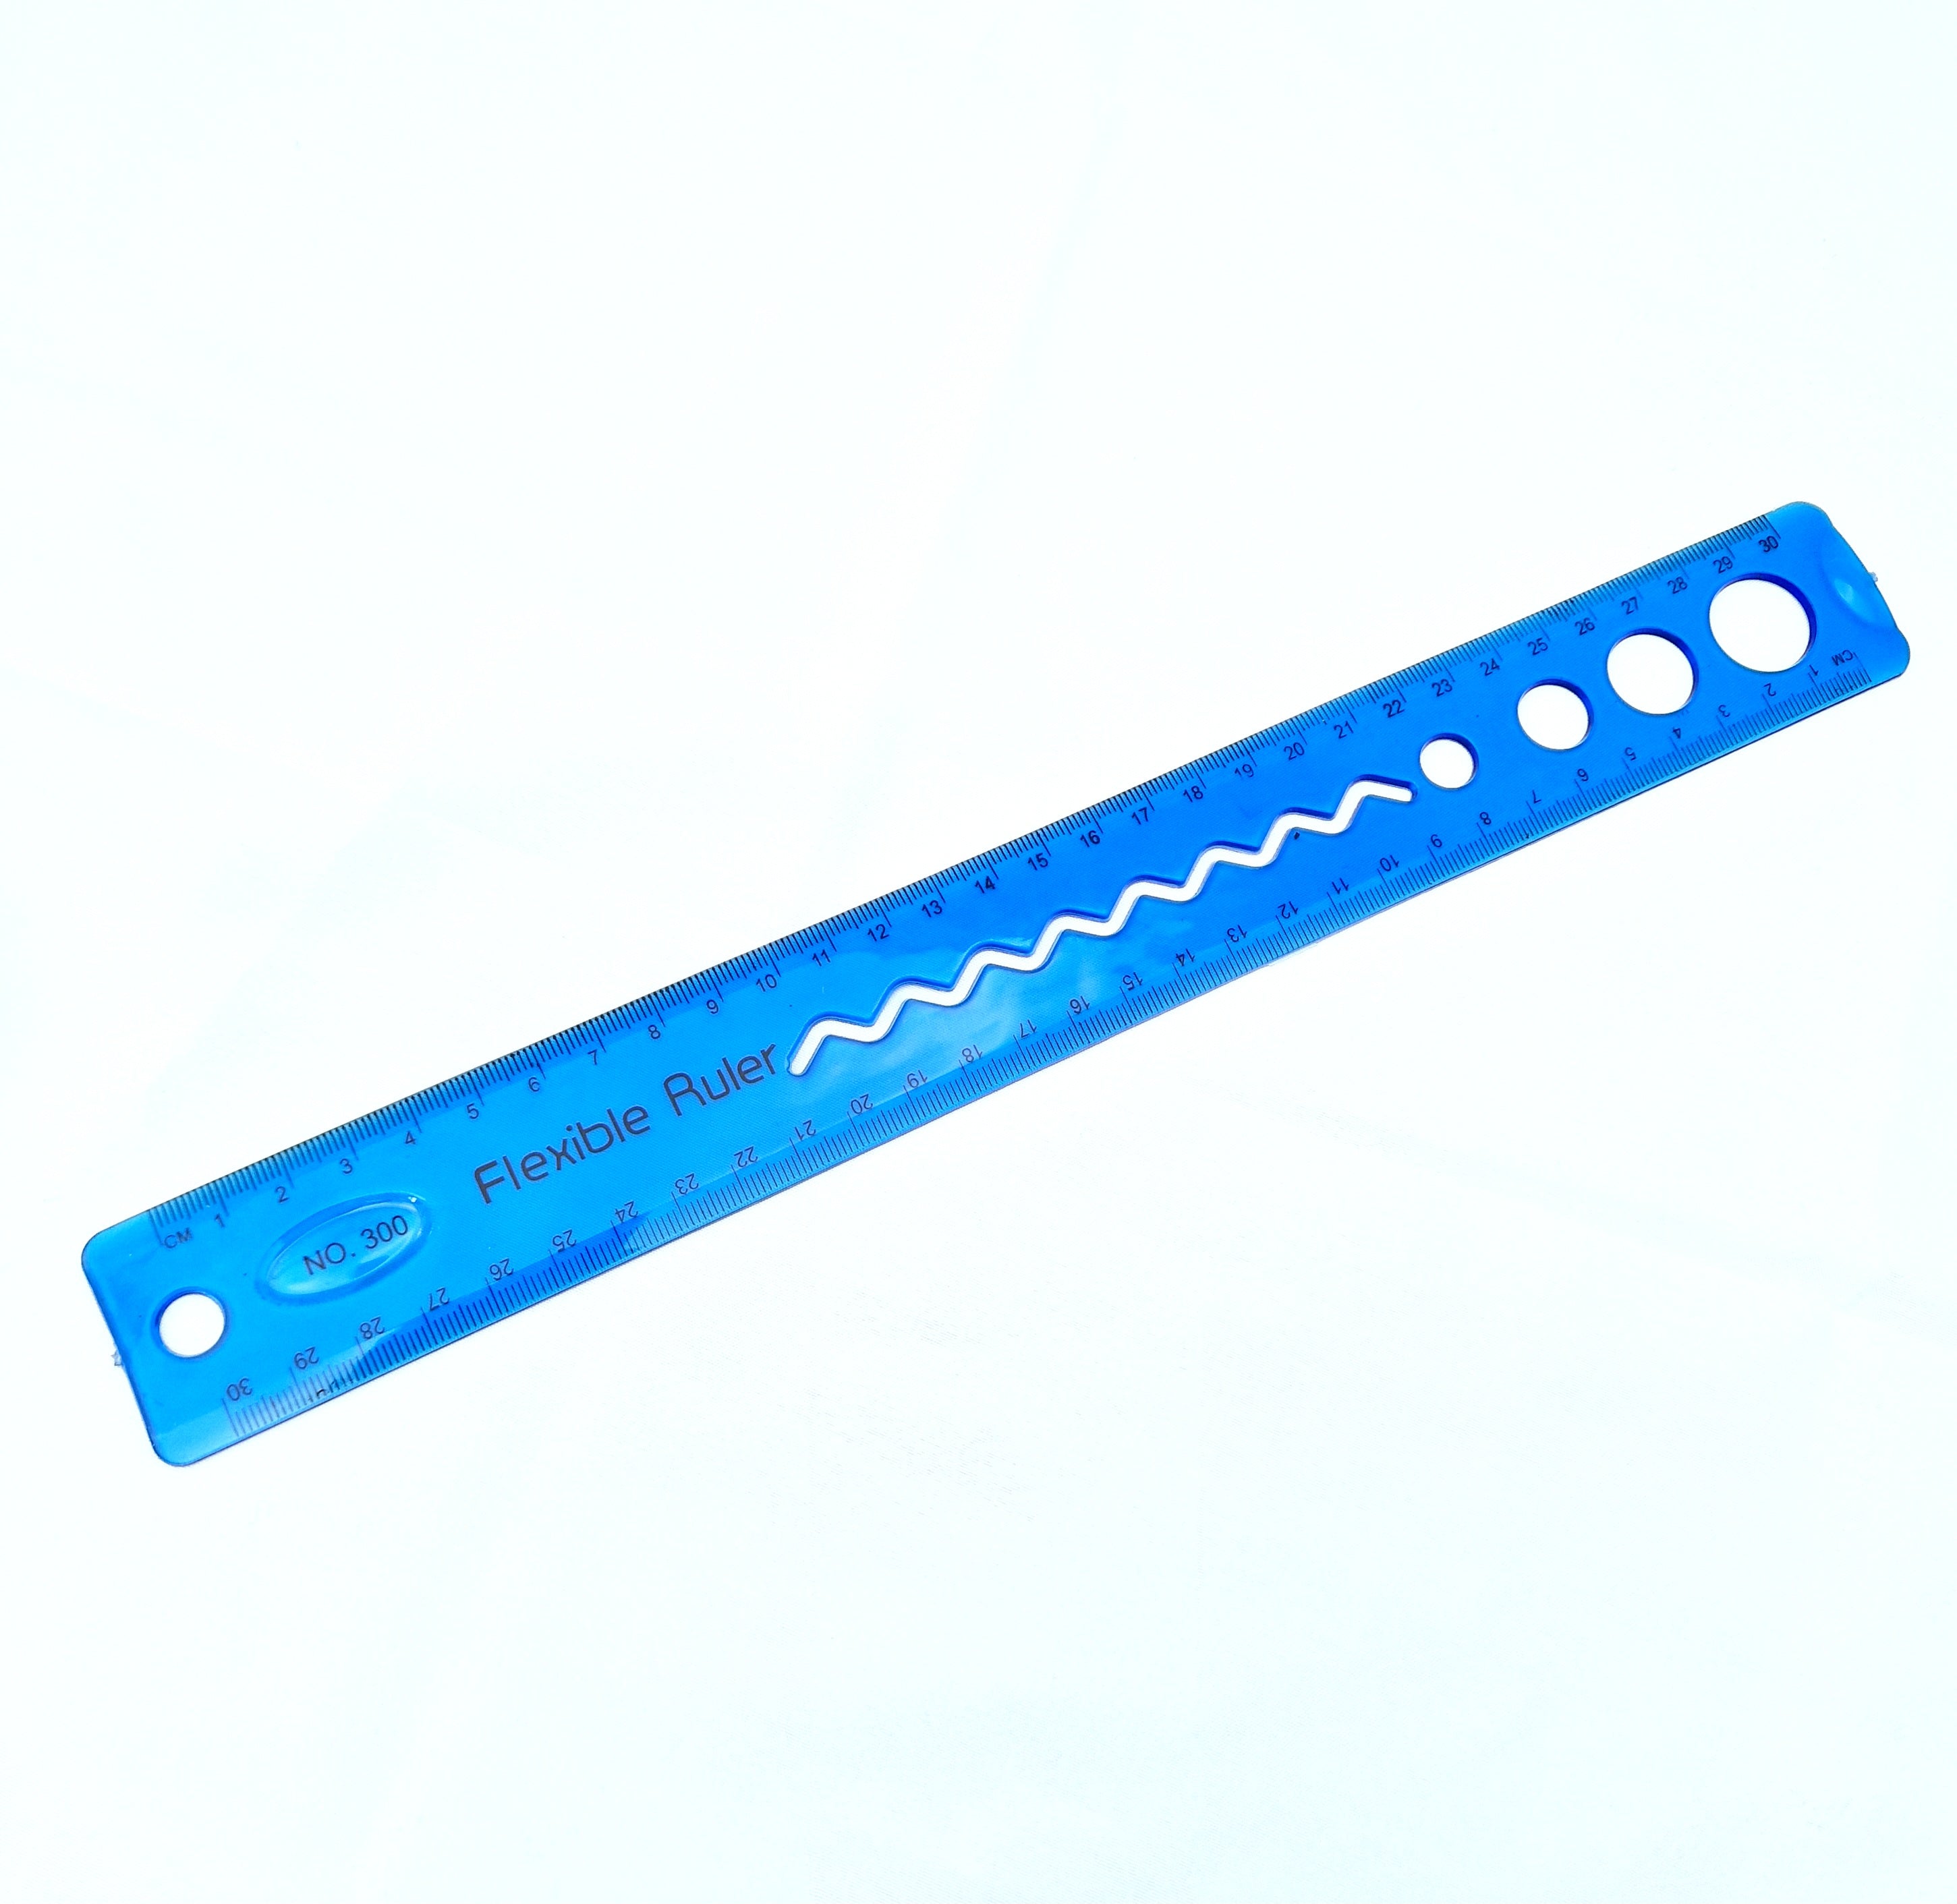 MajorCrafts Blue 30cm 12inch Flexible Bending Ruler